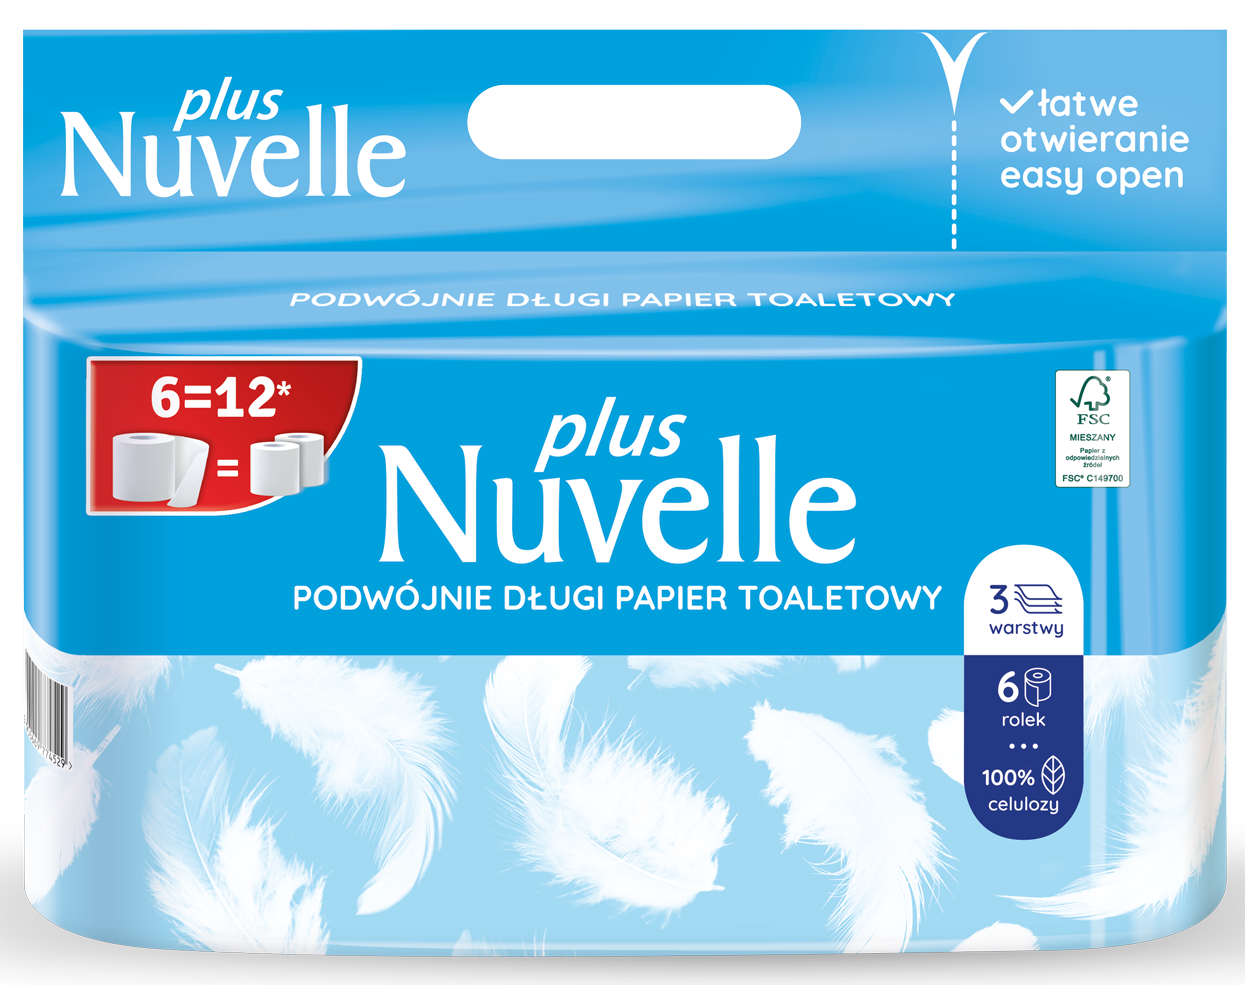 Papier toaletowy Nuvelle Plus 3 warstwy 6 rolek = 12 rolek